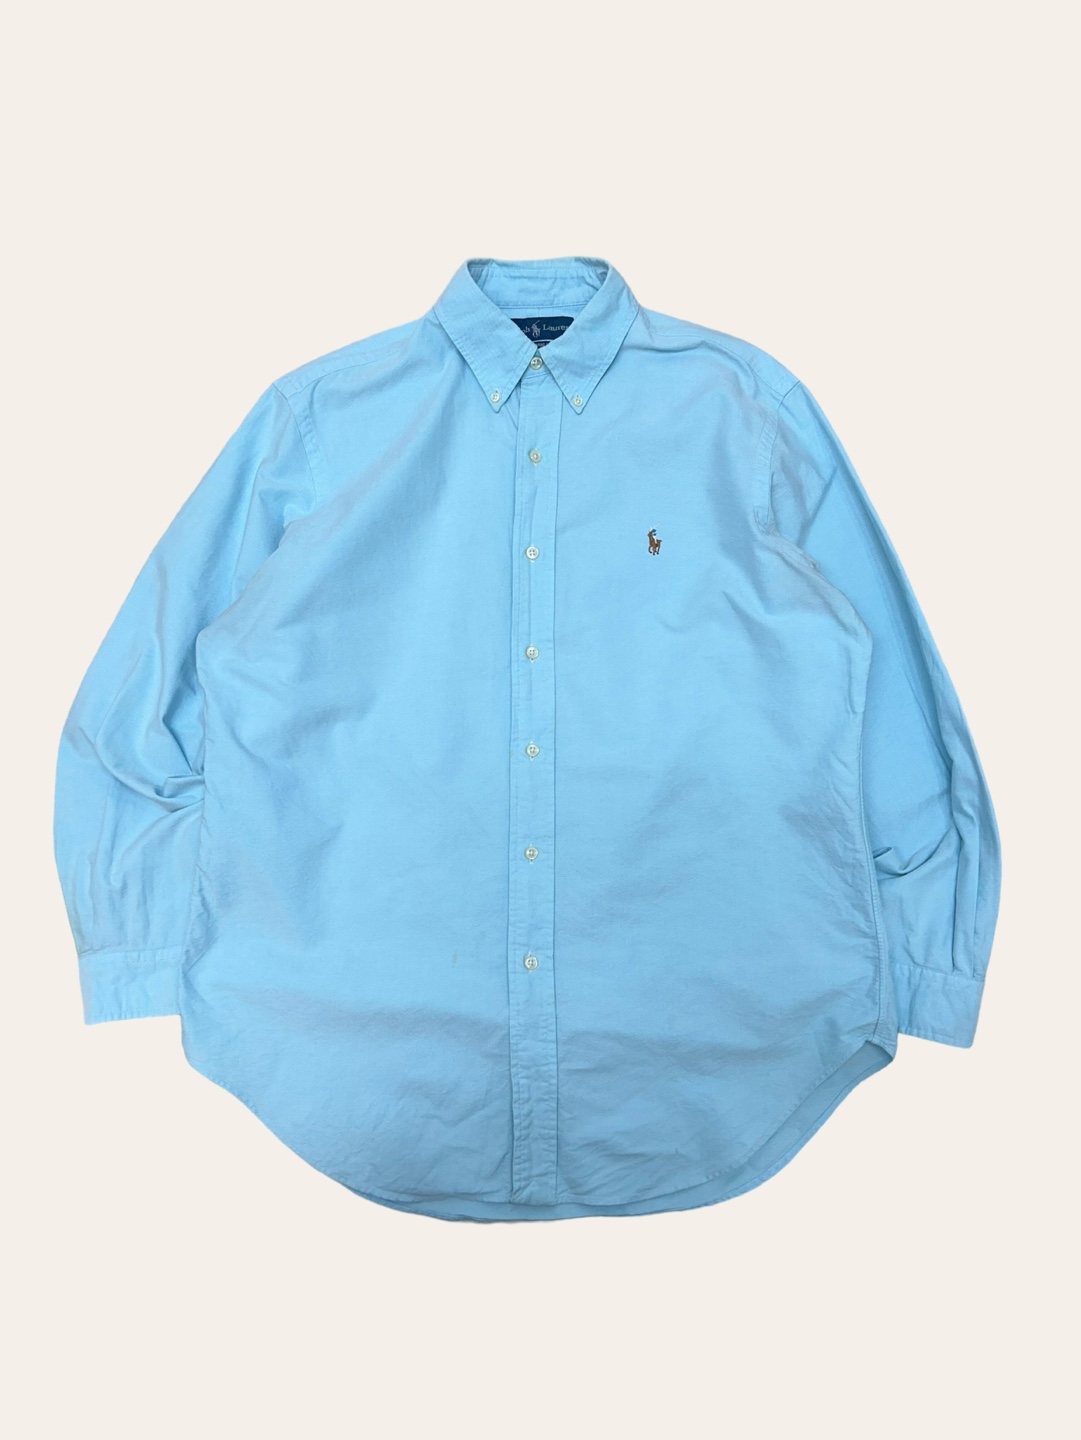 (From USA)Polo ralph lauren sky blue oxford shirt 16